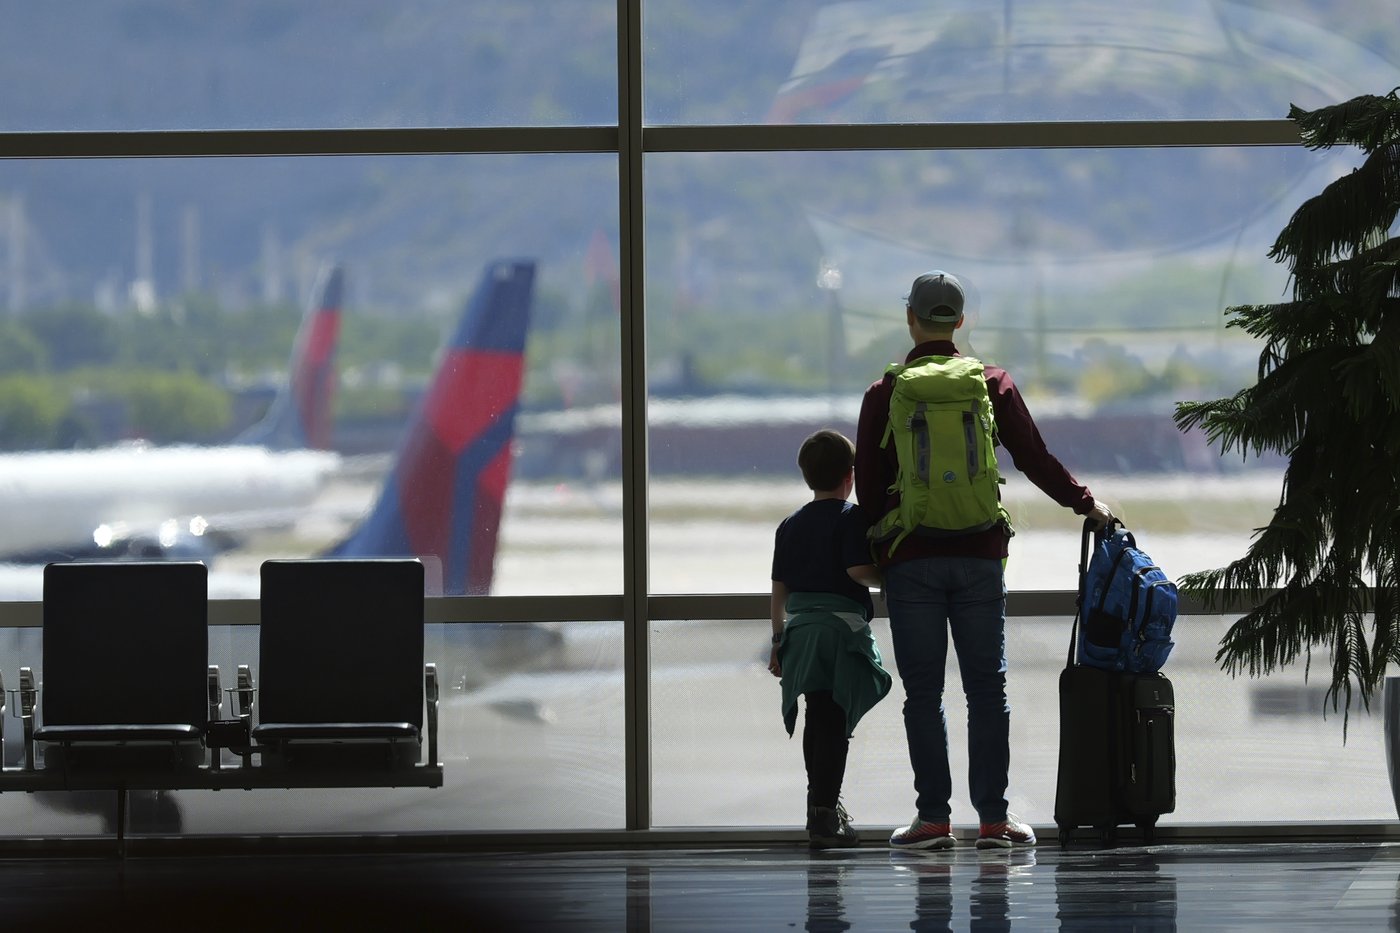 Les É.-U. veulent garantir la gratuité des sièges d’avion familiaux